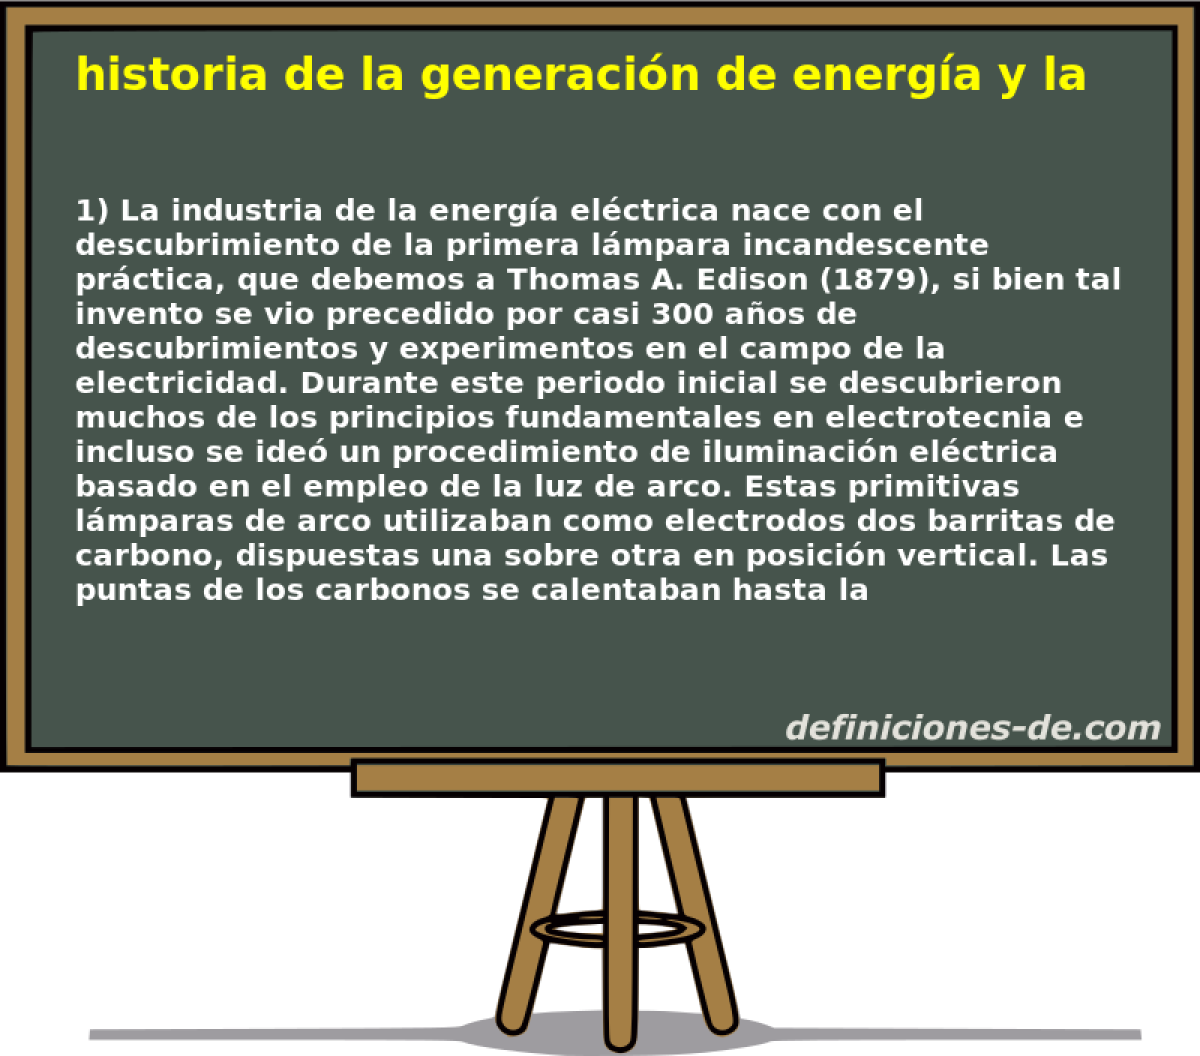 historia de la generacin de energa y las centrales elctricas 